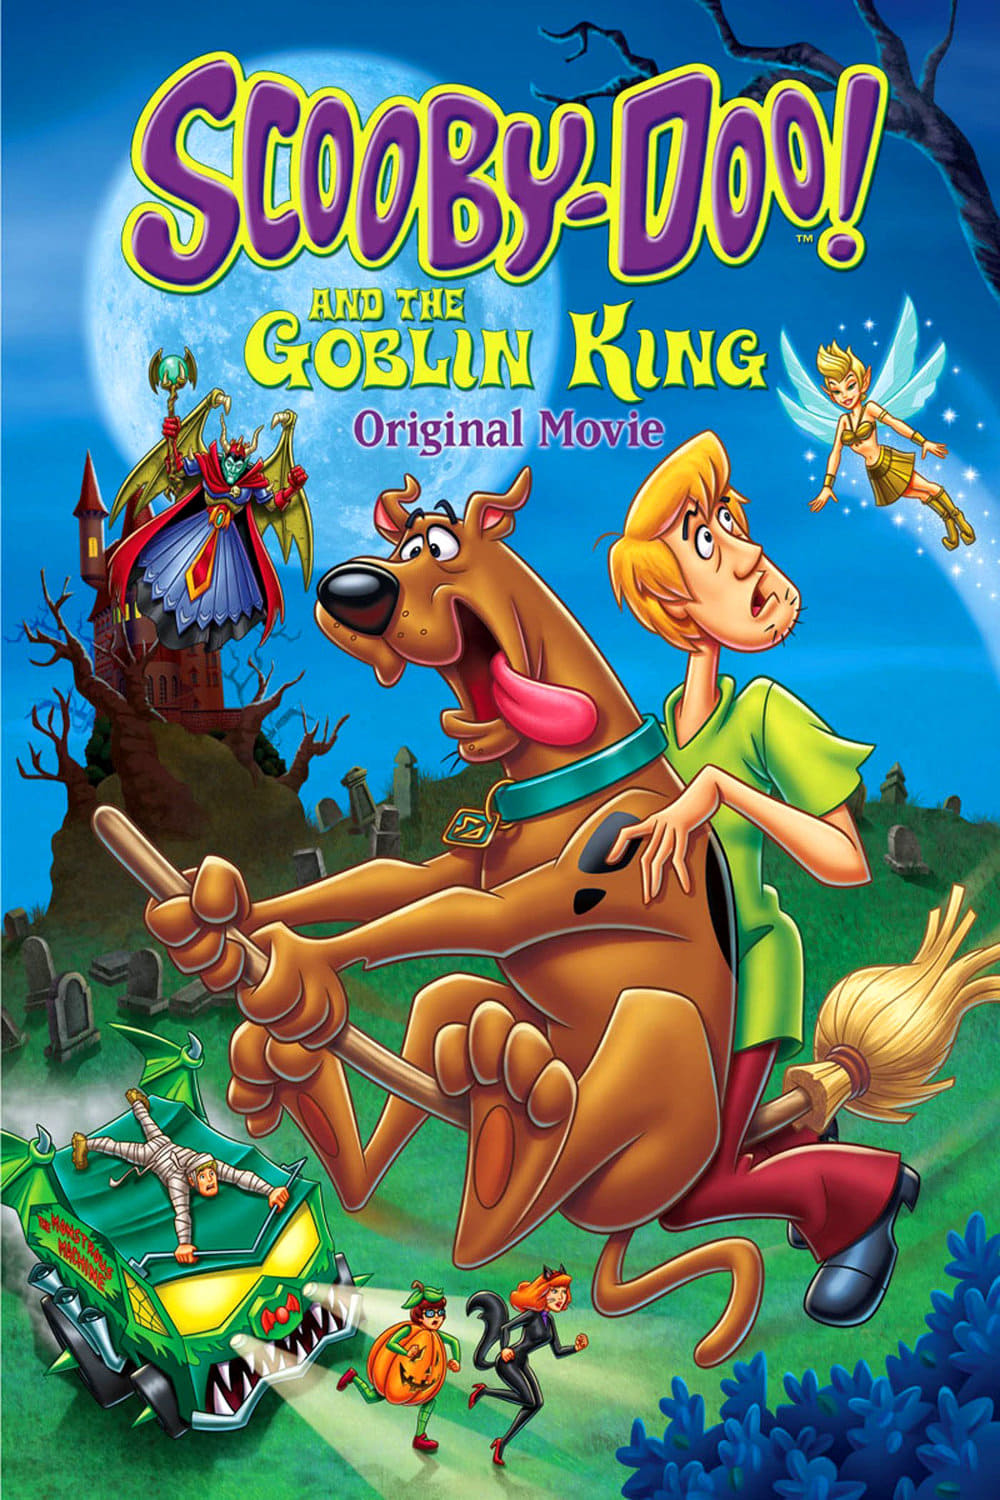 ดูหนังออนไลน์ฟรี Scooby-Doo and the Goblin King (2008) สกุ๊ปบี้ดู ตอน ราชาแห่งภูติ